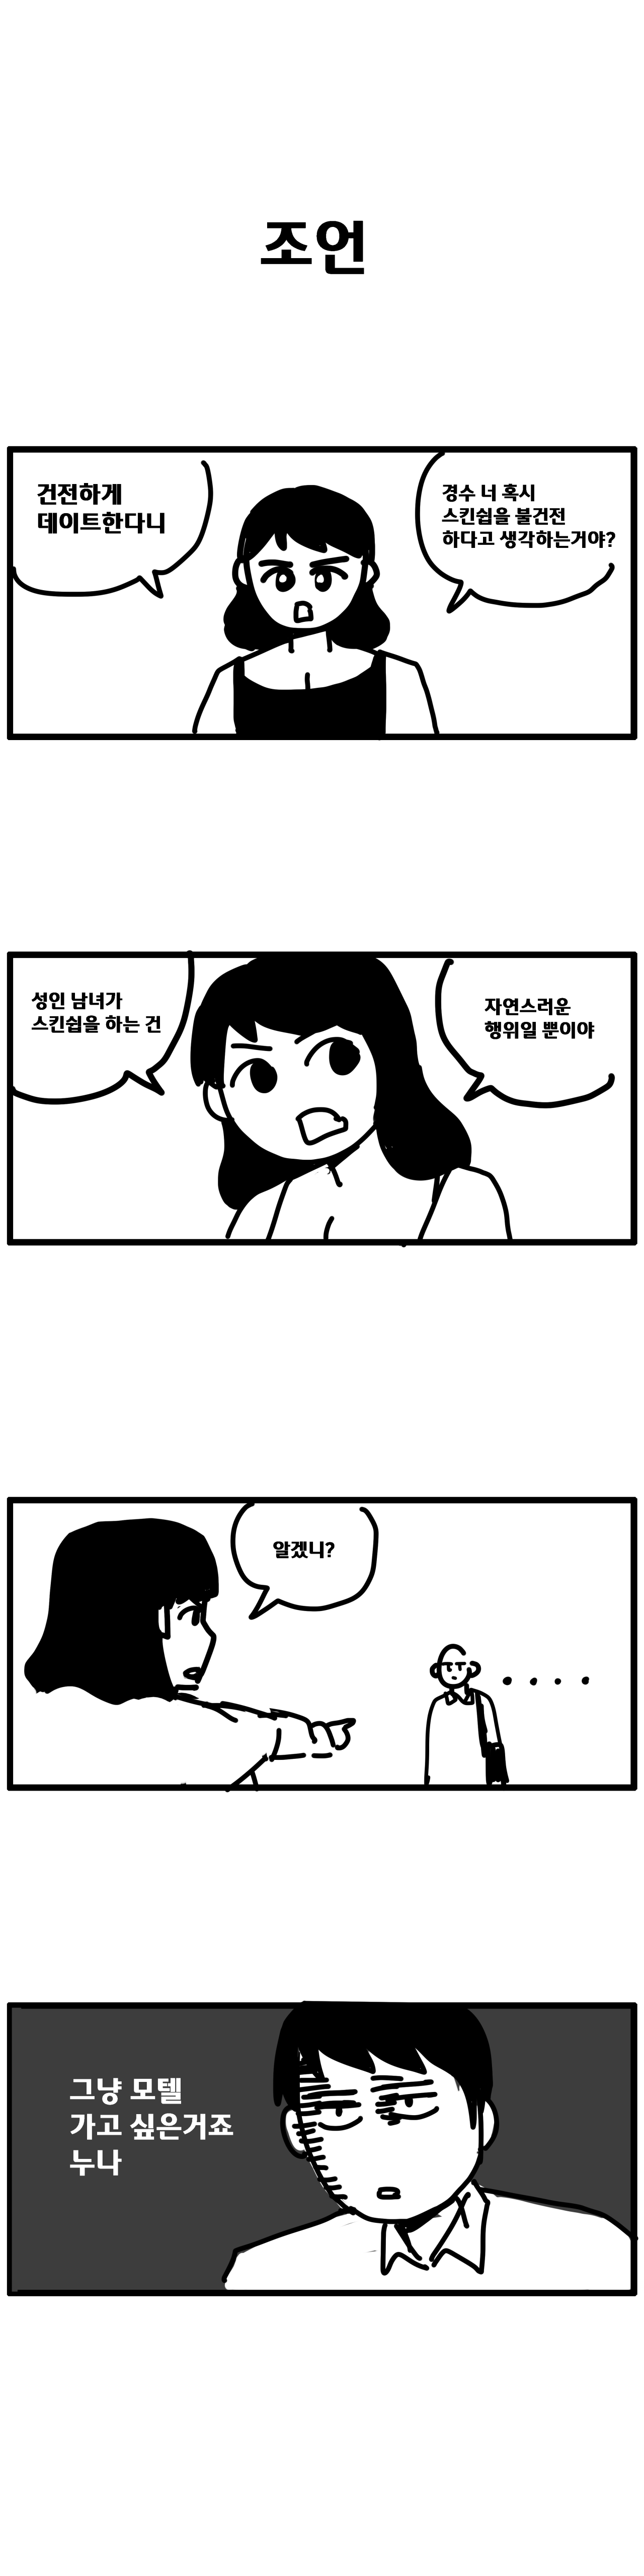 경수 누나 2화_06.png 옆집 누나랑 썸타는 만화. manhwa